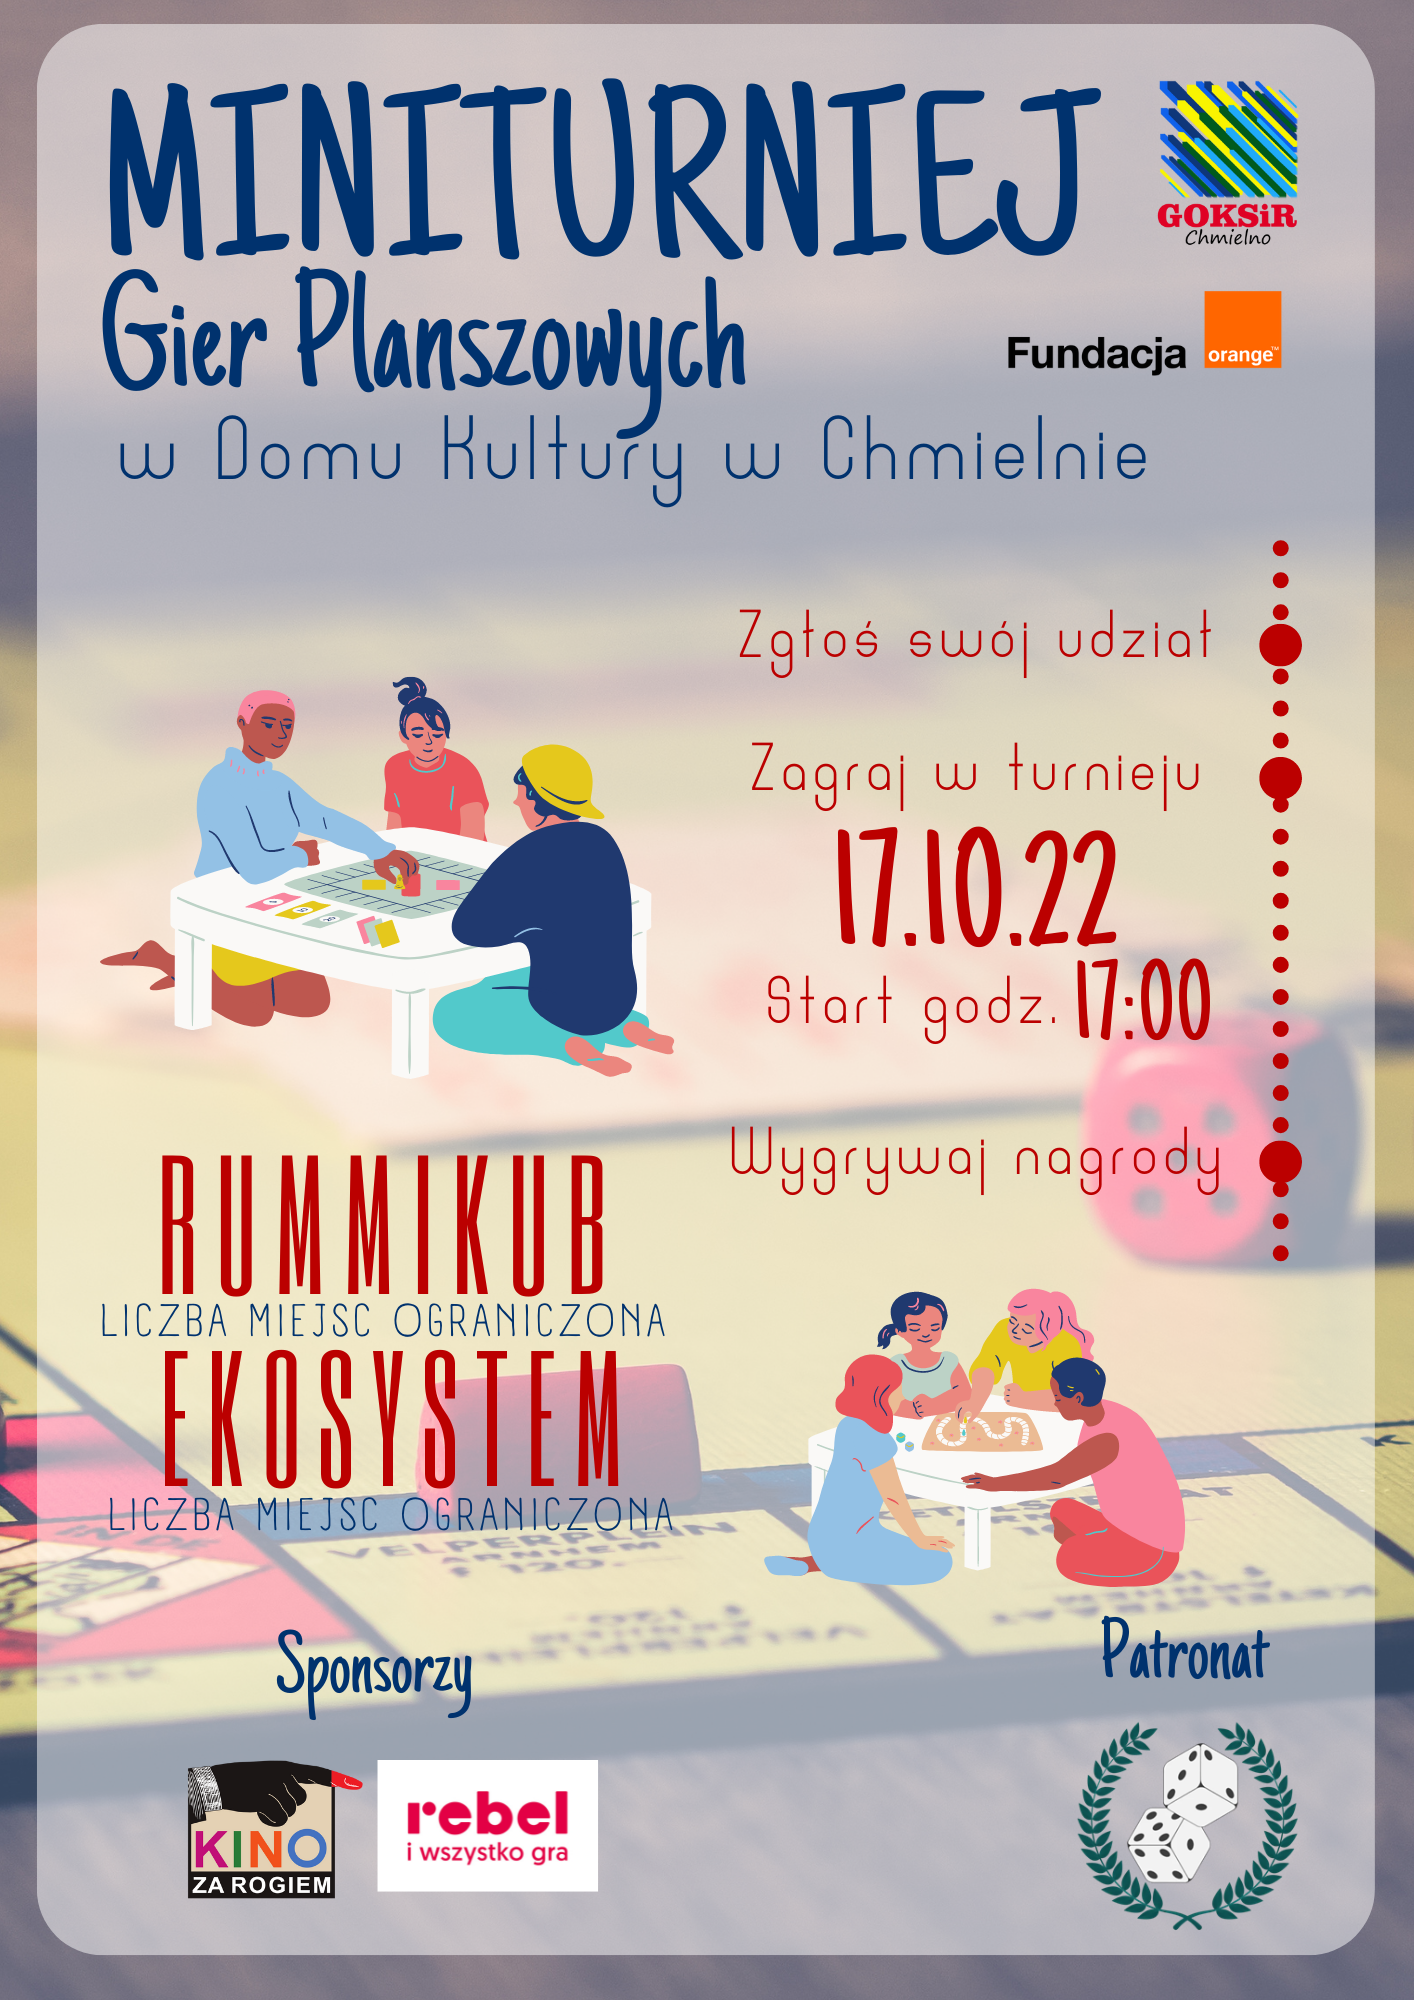 Plakat wydarzenia "MiniTurniej Gier Planszowych" który odbywać się będzie w Chmielnie